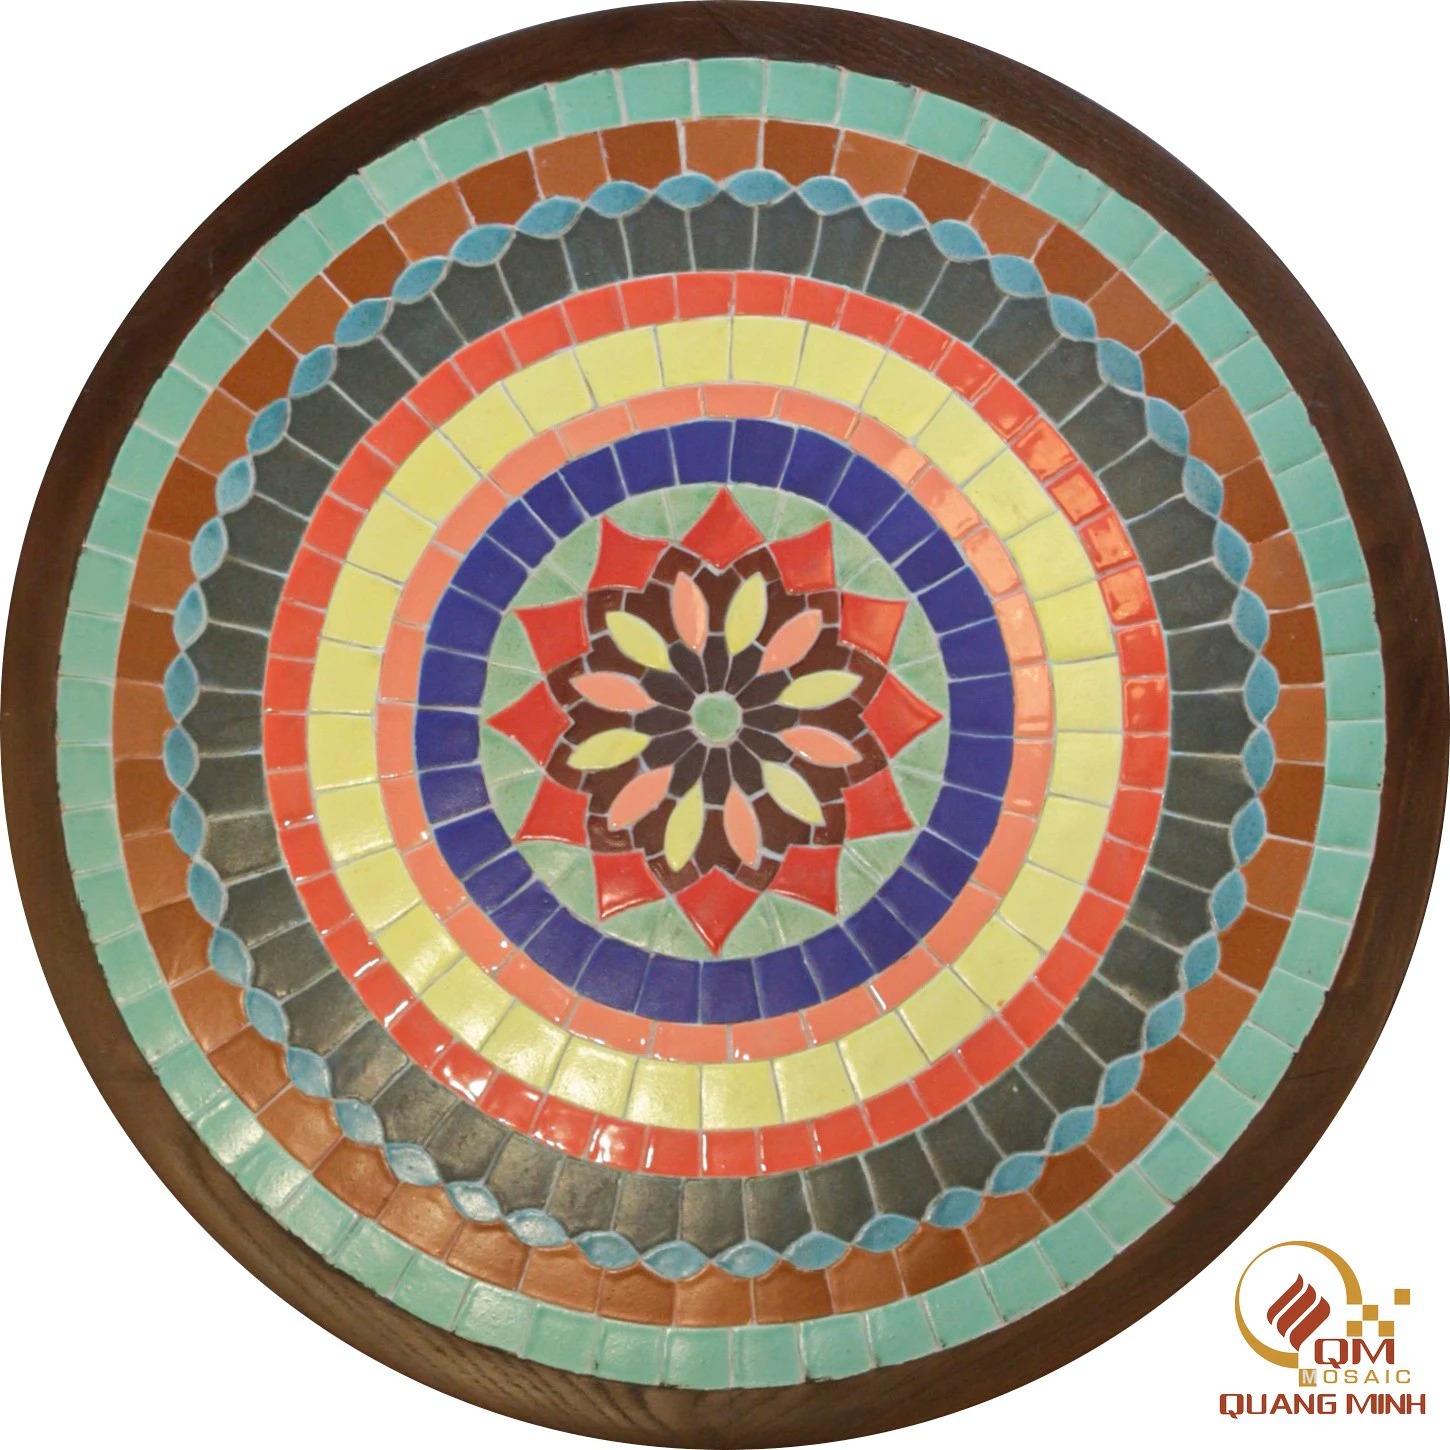 Bàn Tròn Mosaic Gốm – Họa tiết Tâm Giao QM-BT24